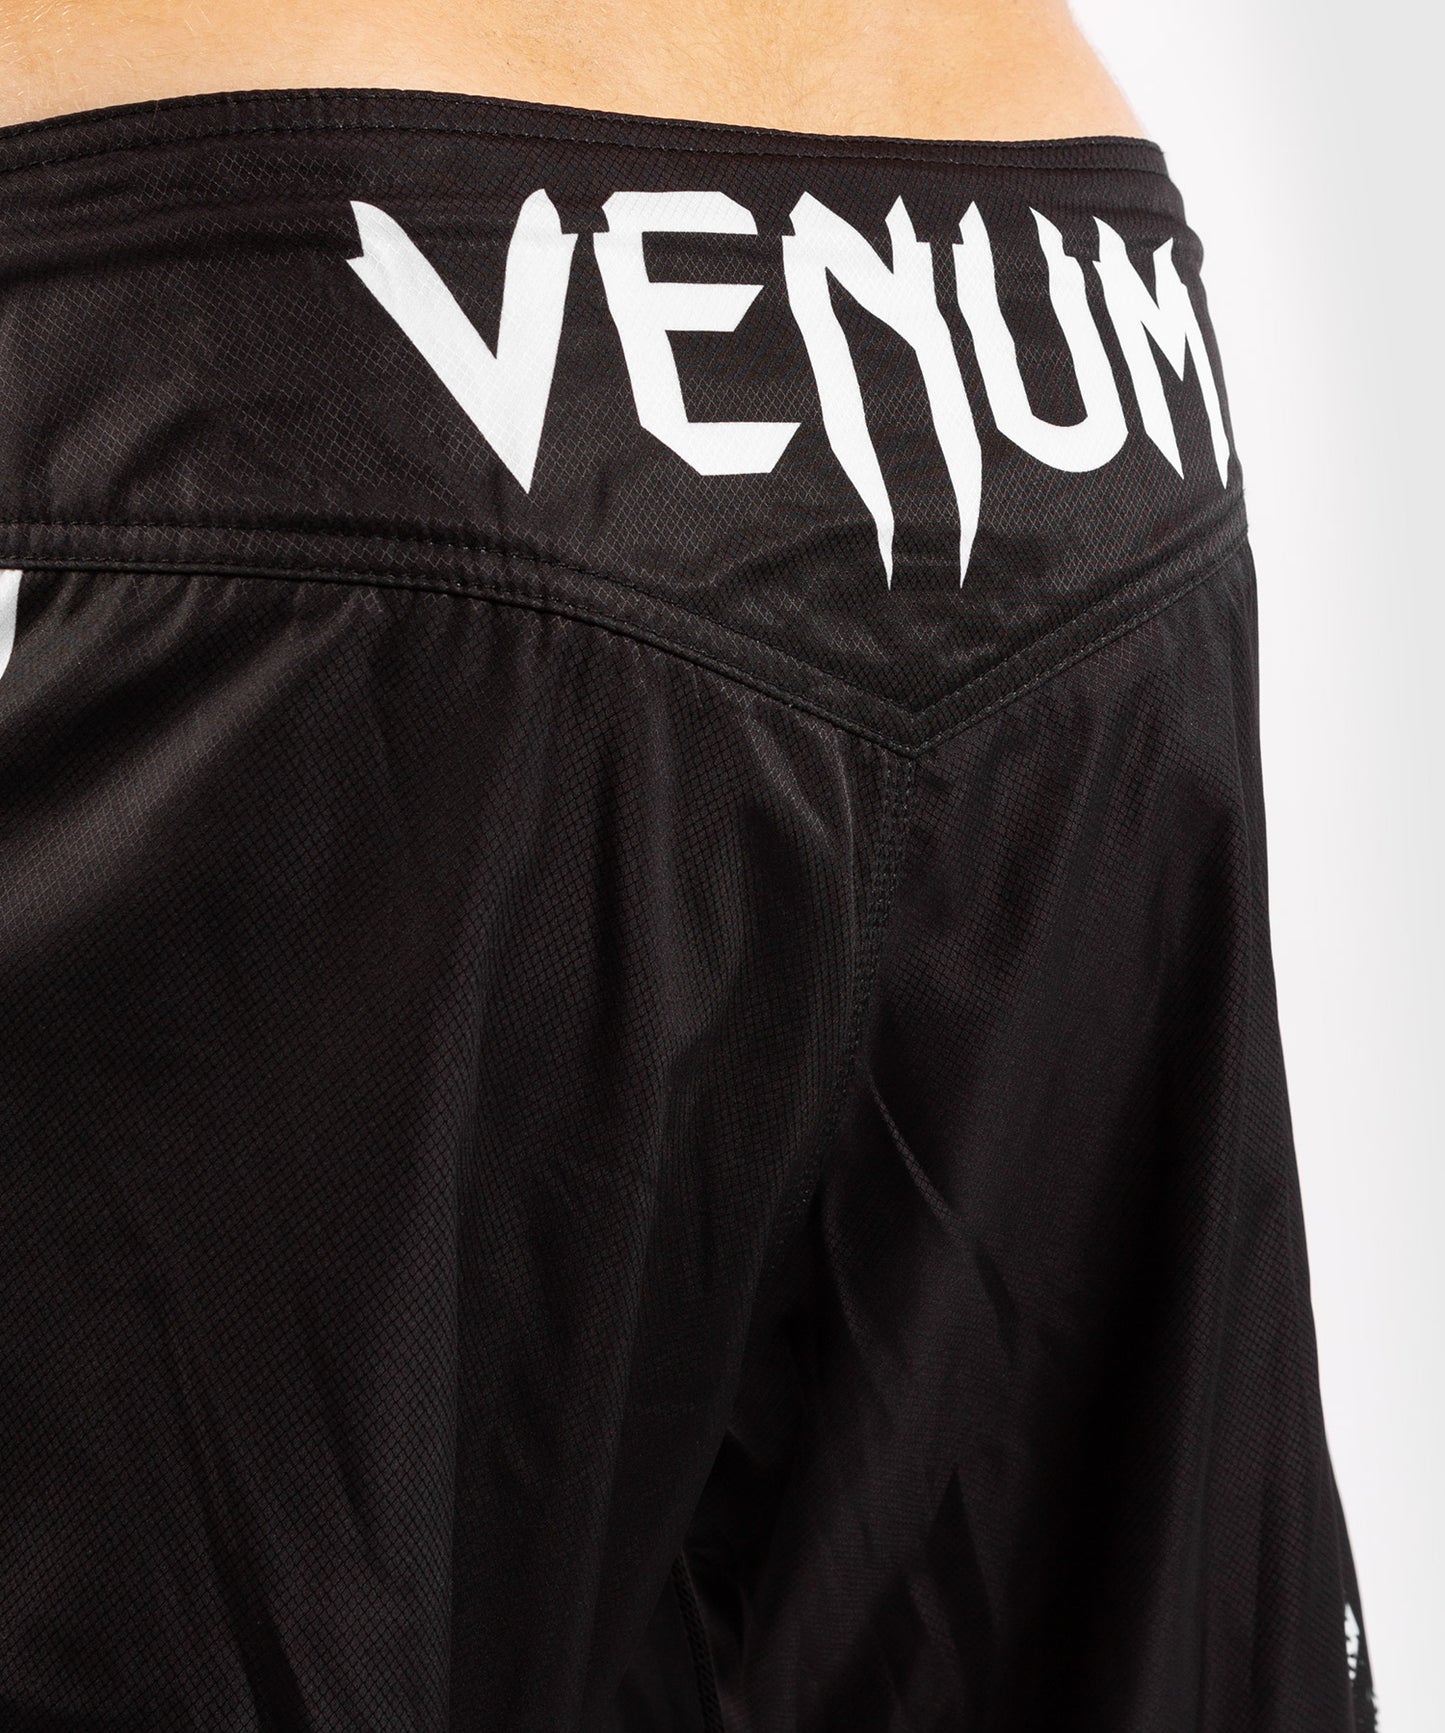 Venum Signature Fightshorts - Black/White